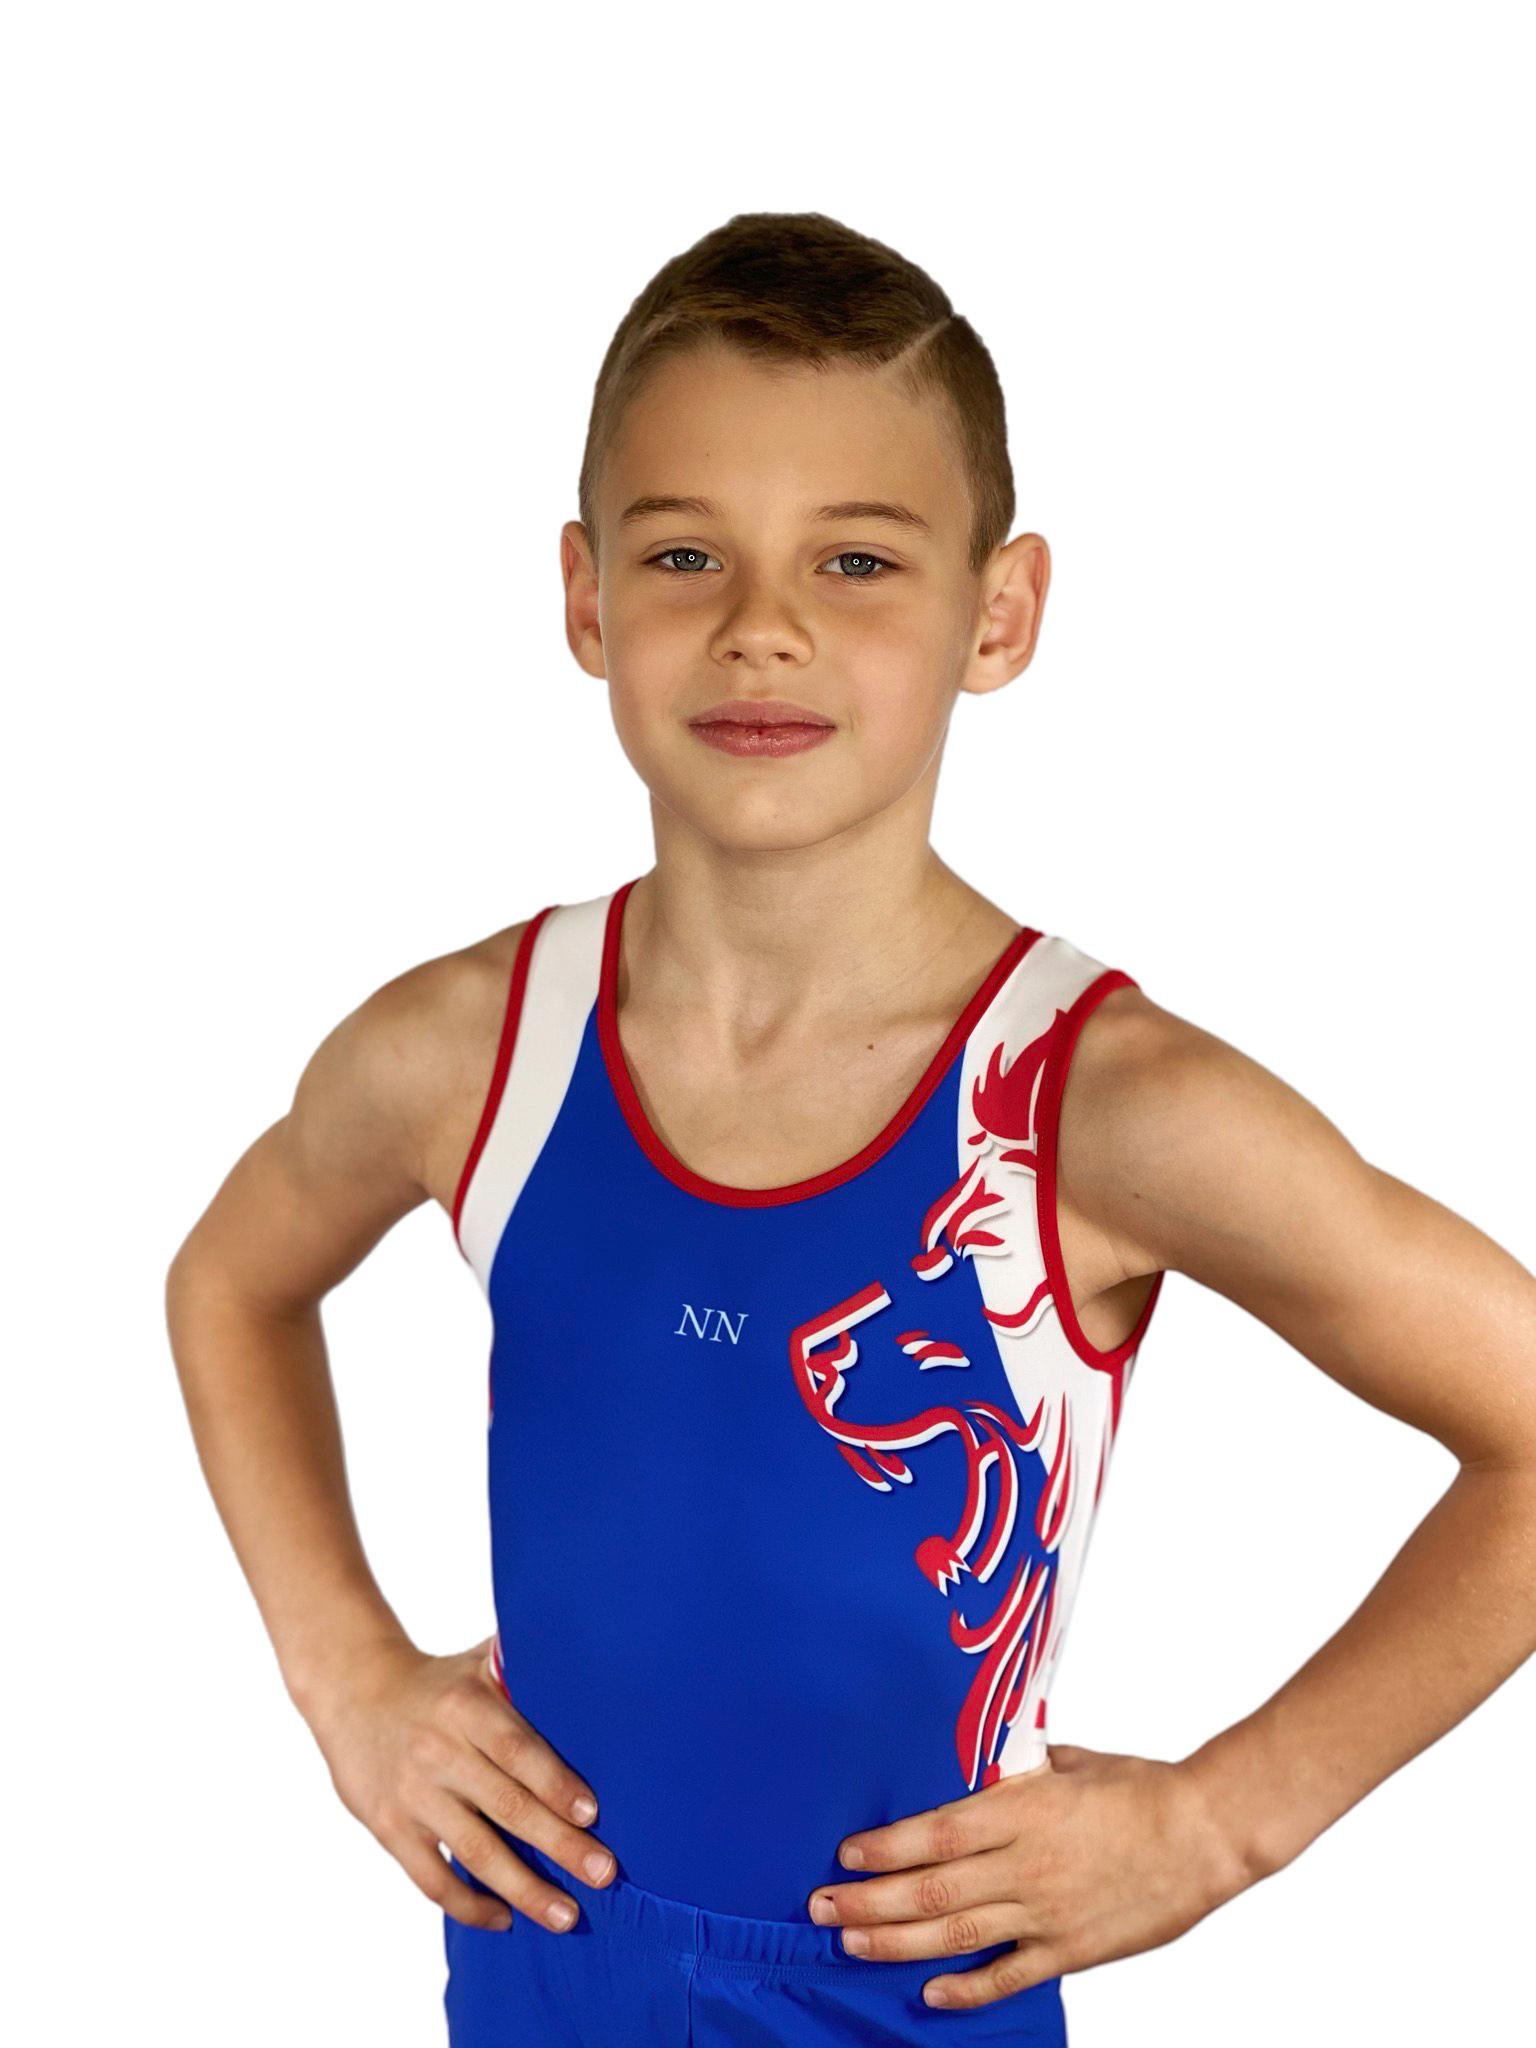 Купальник мужской для спортивной гимнастики GK Sport 201-17 синий с бело-красной вставкой без рукава